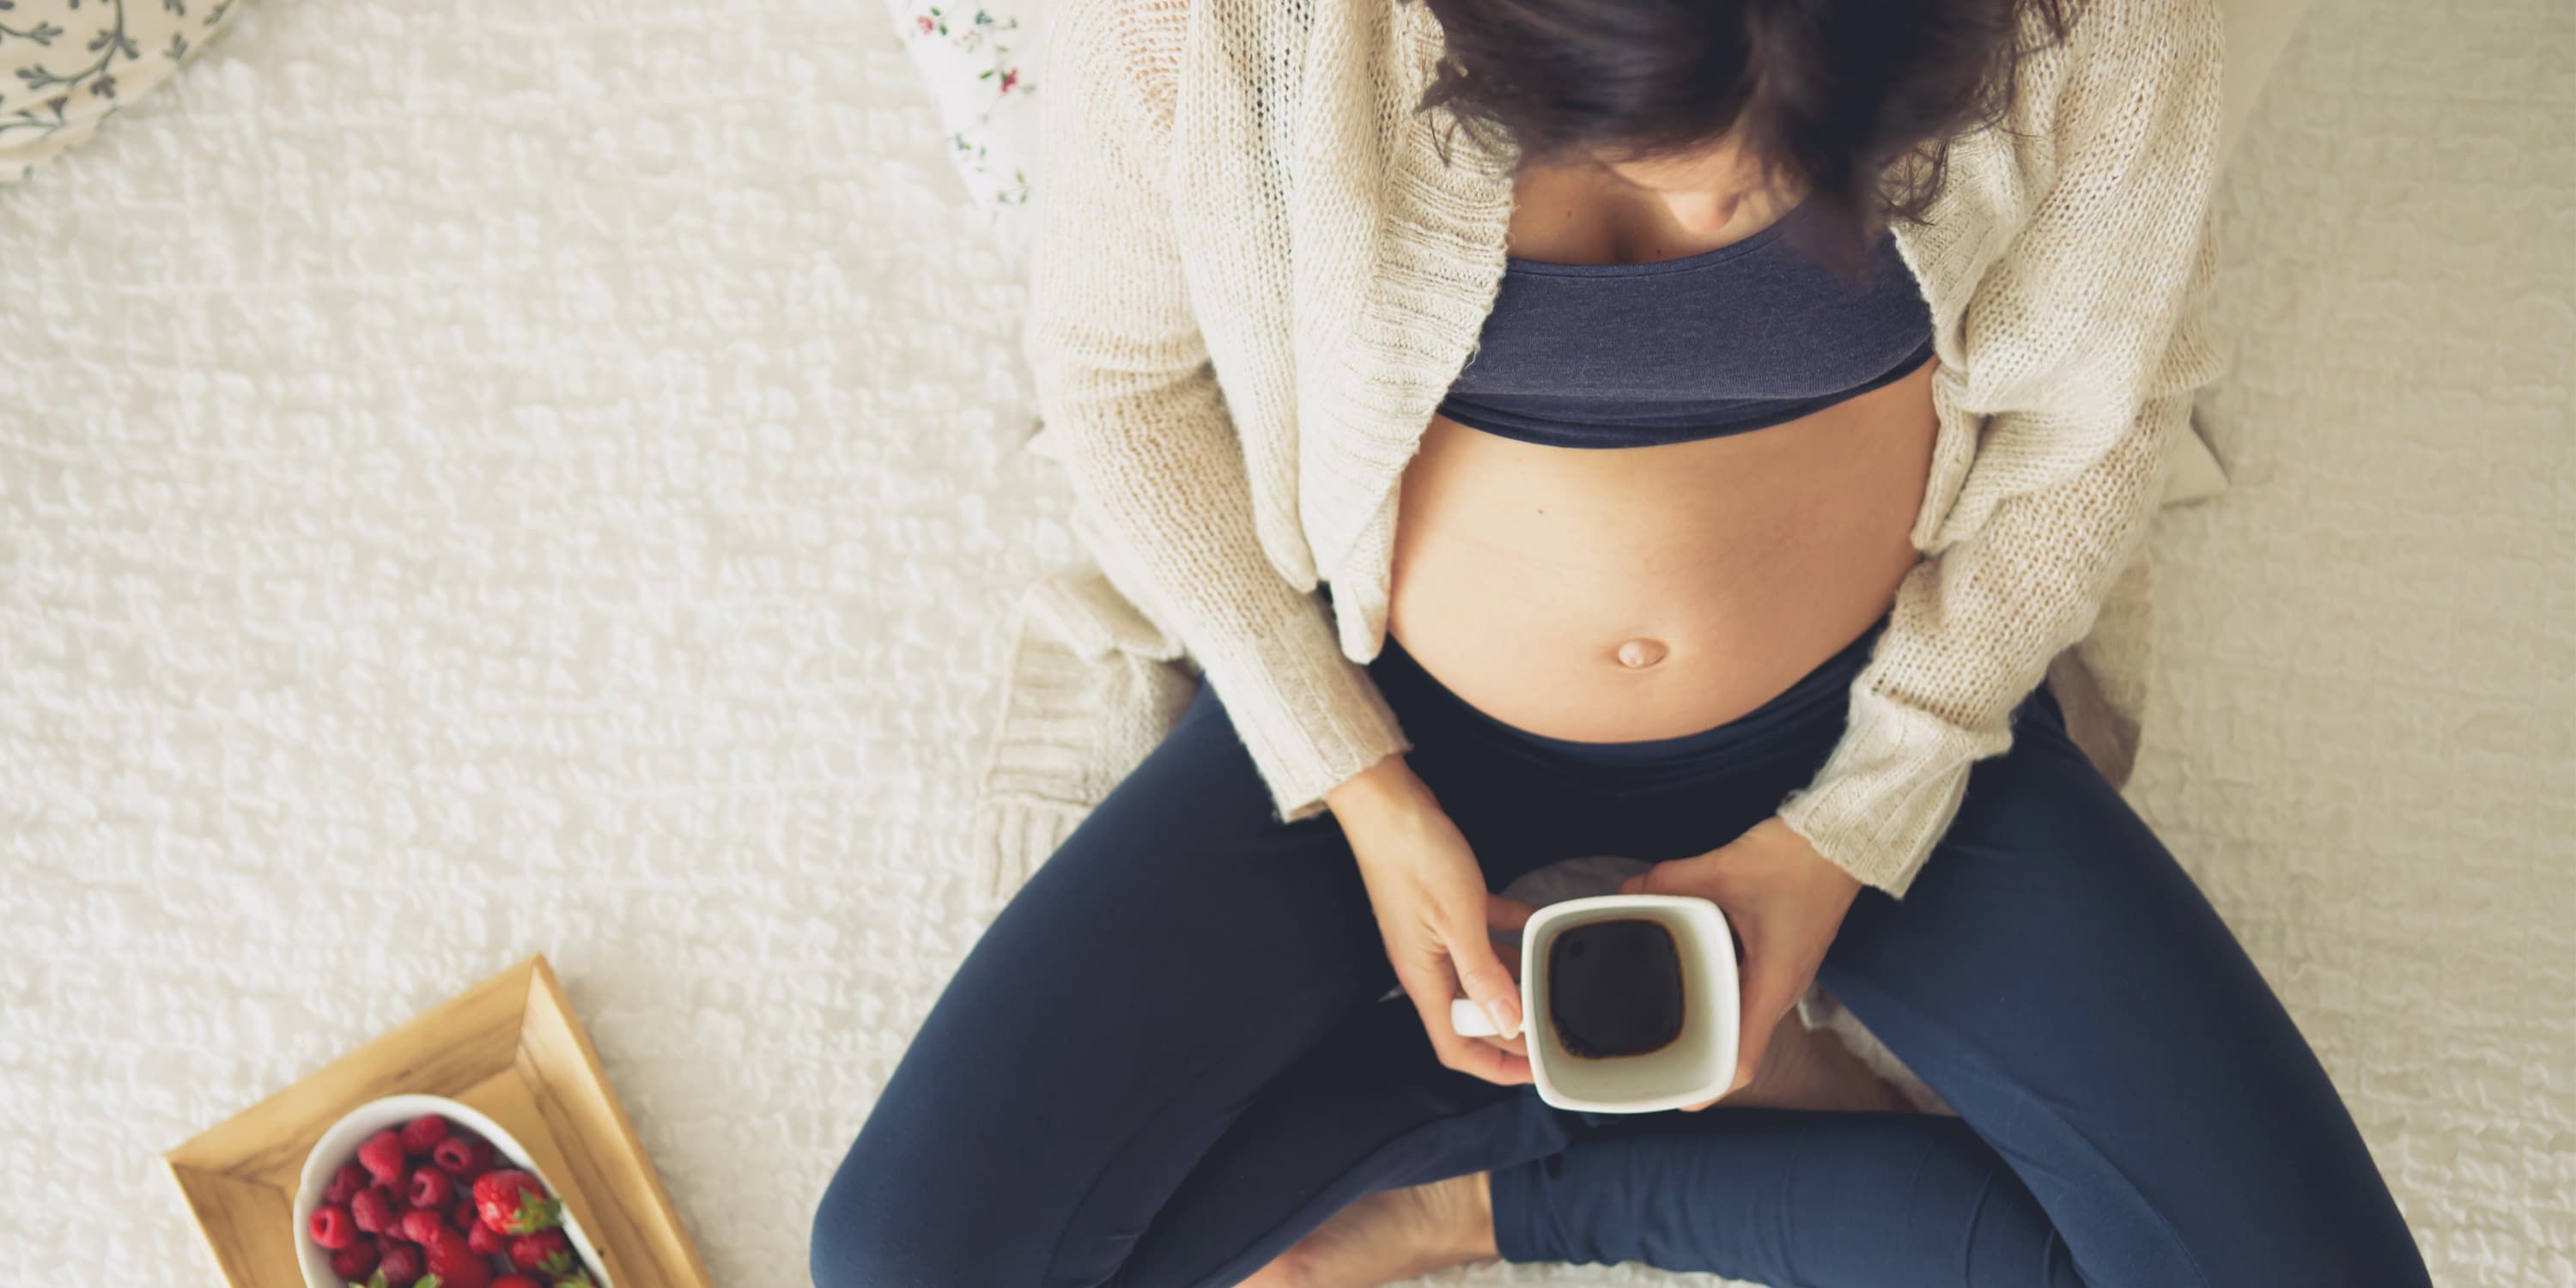 mulher grávida sentada sobre uma coberta no chão com café e morangos